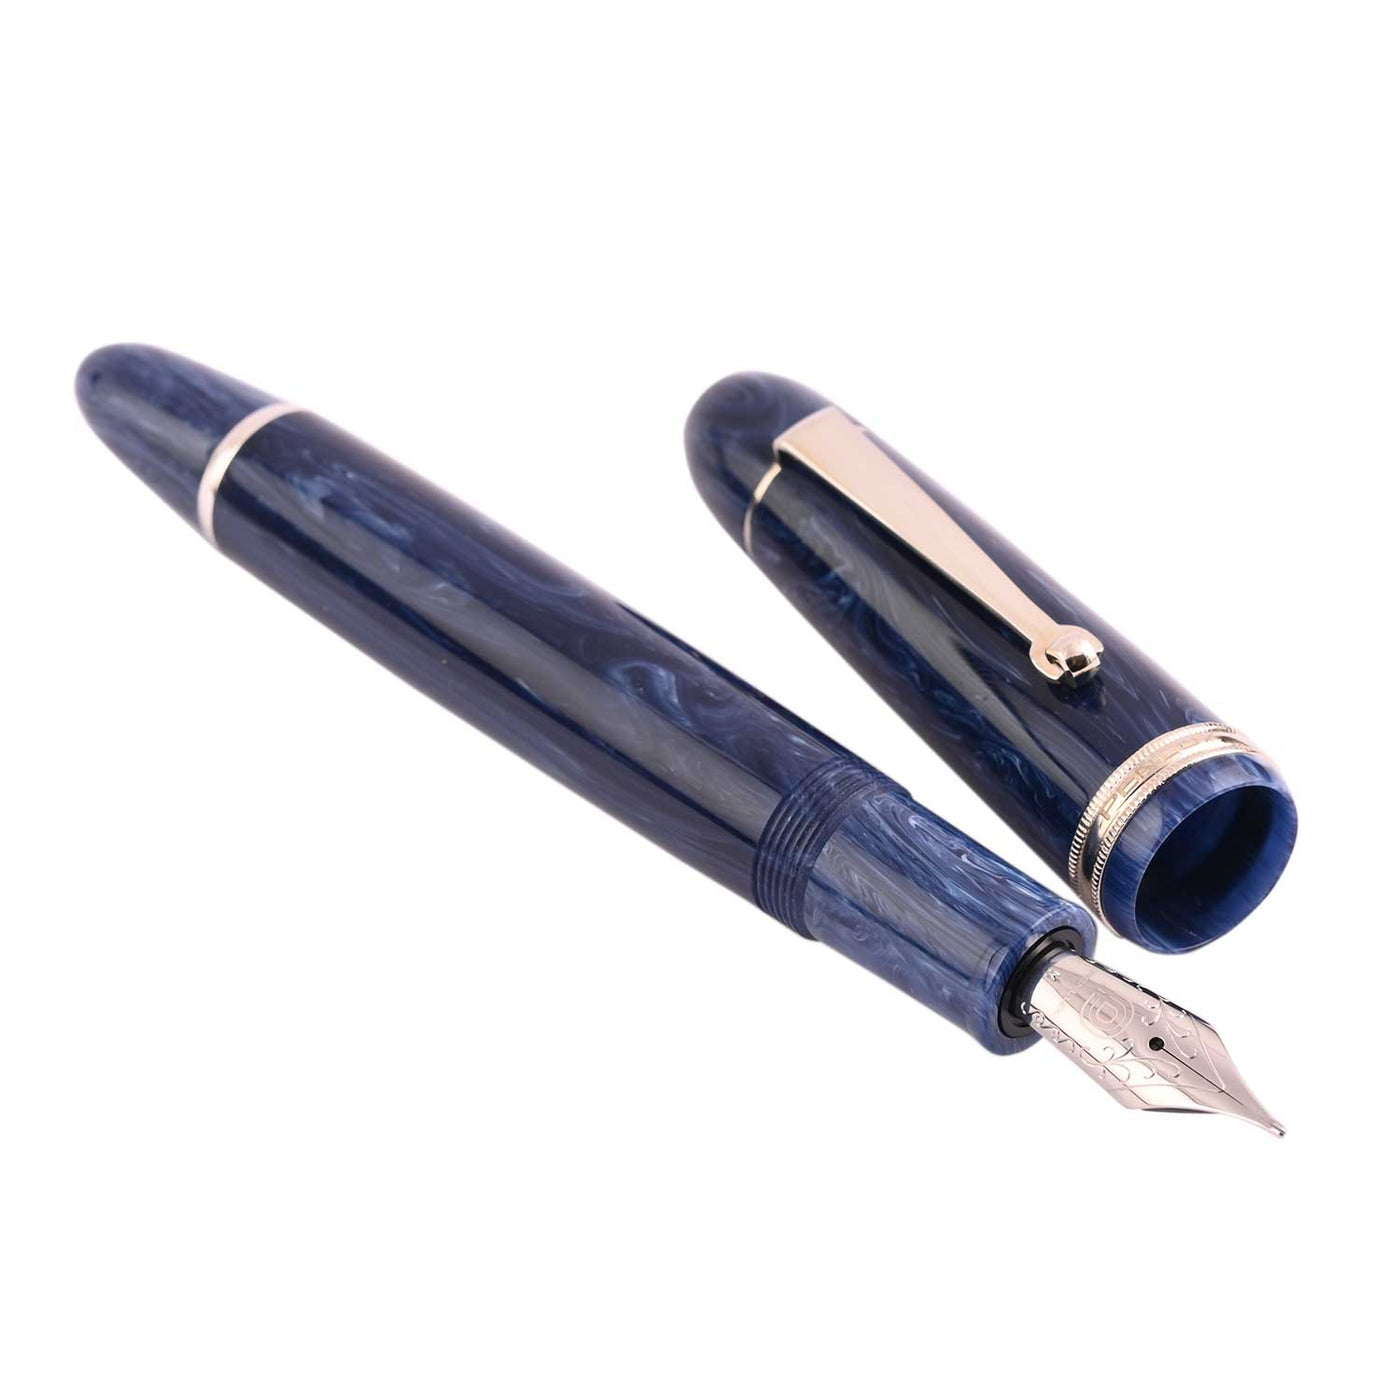 Penlux Masterpiece Grande Fountain Pen - Blue Wave 2